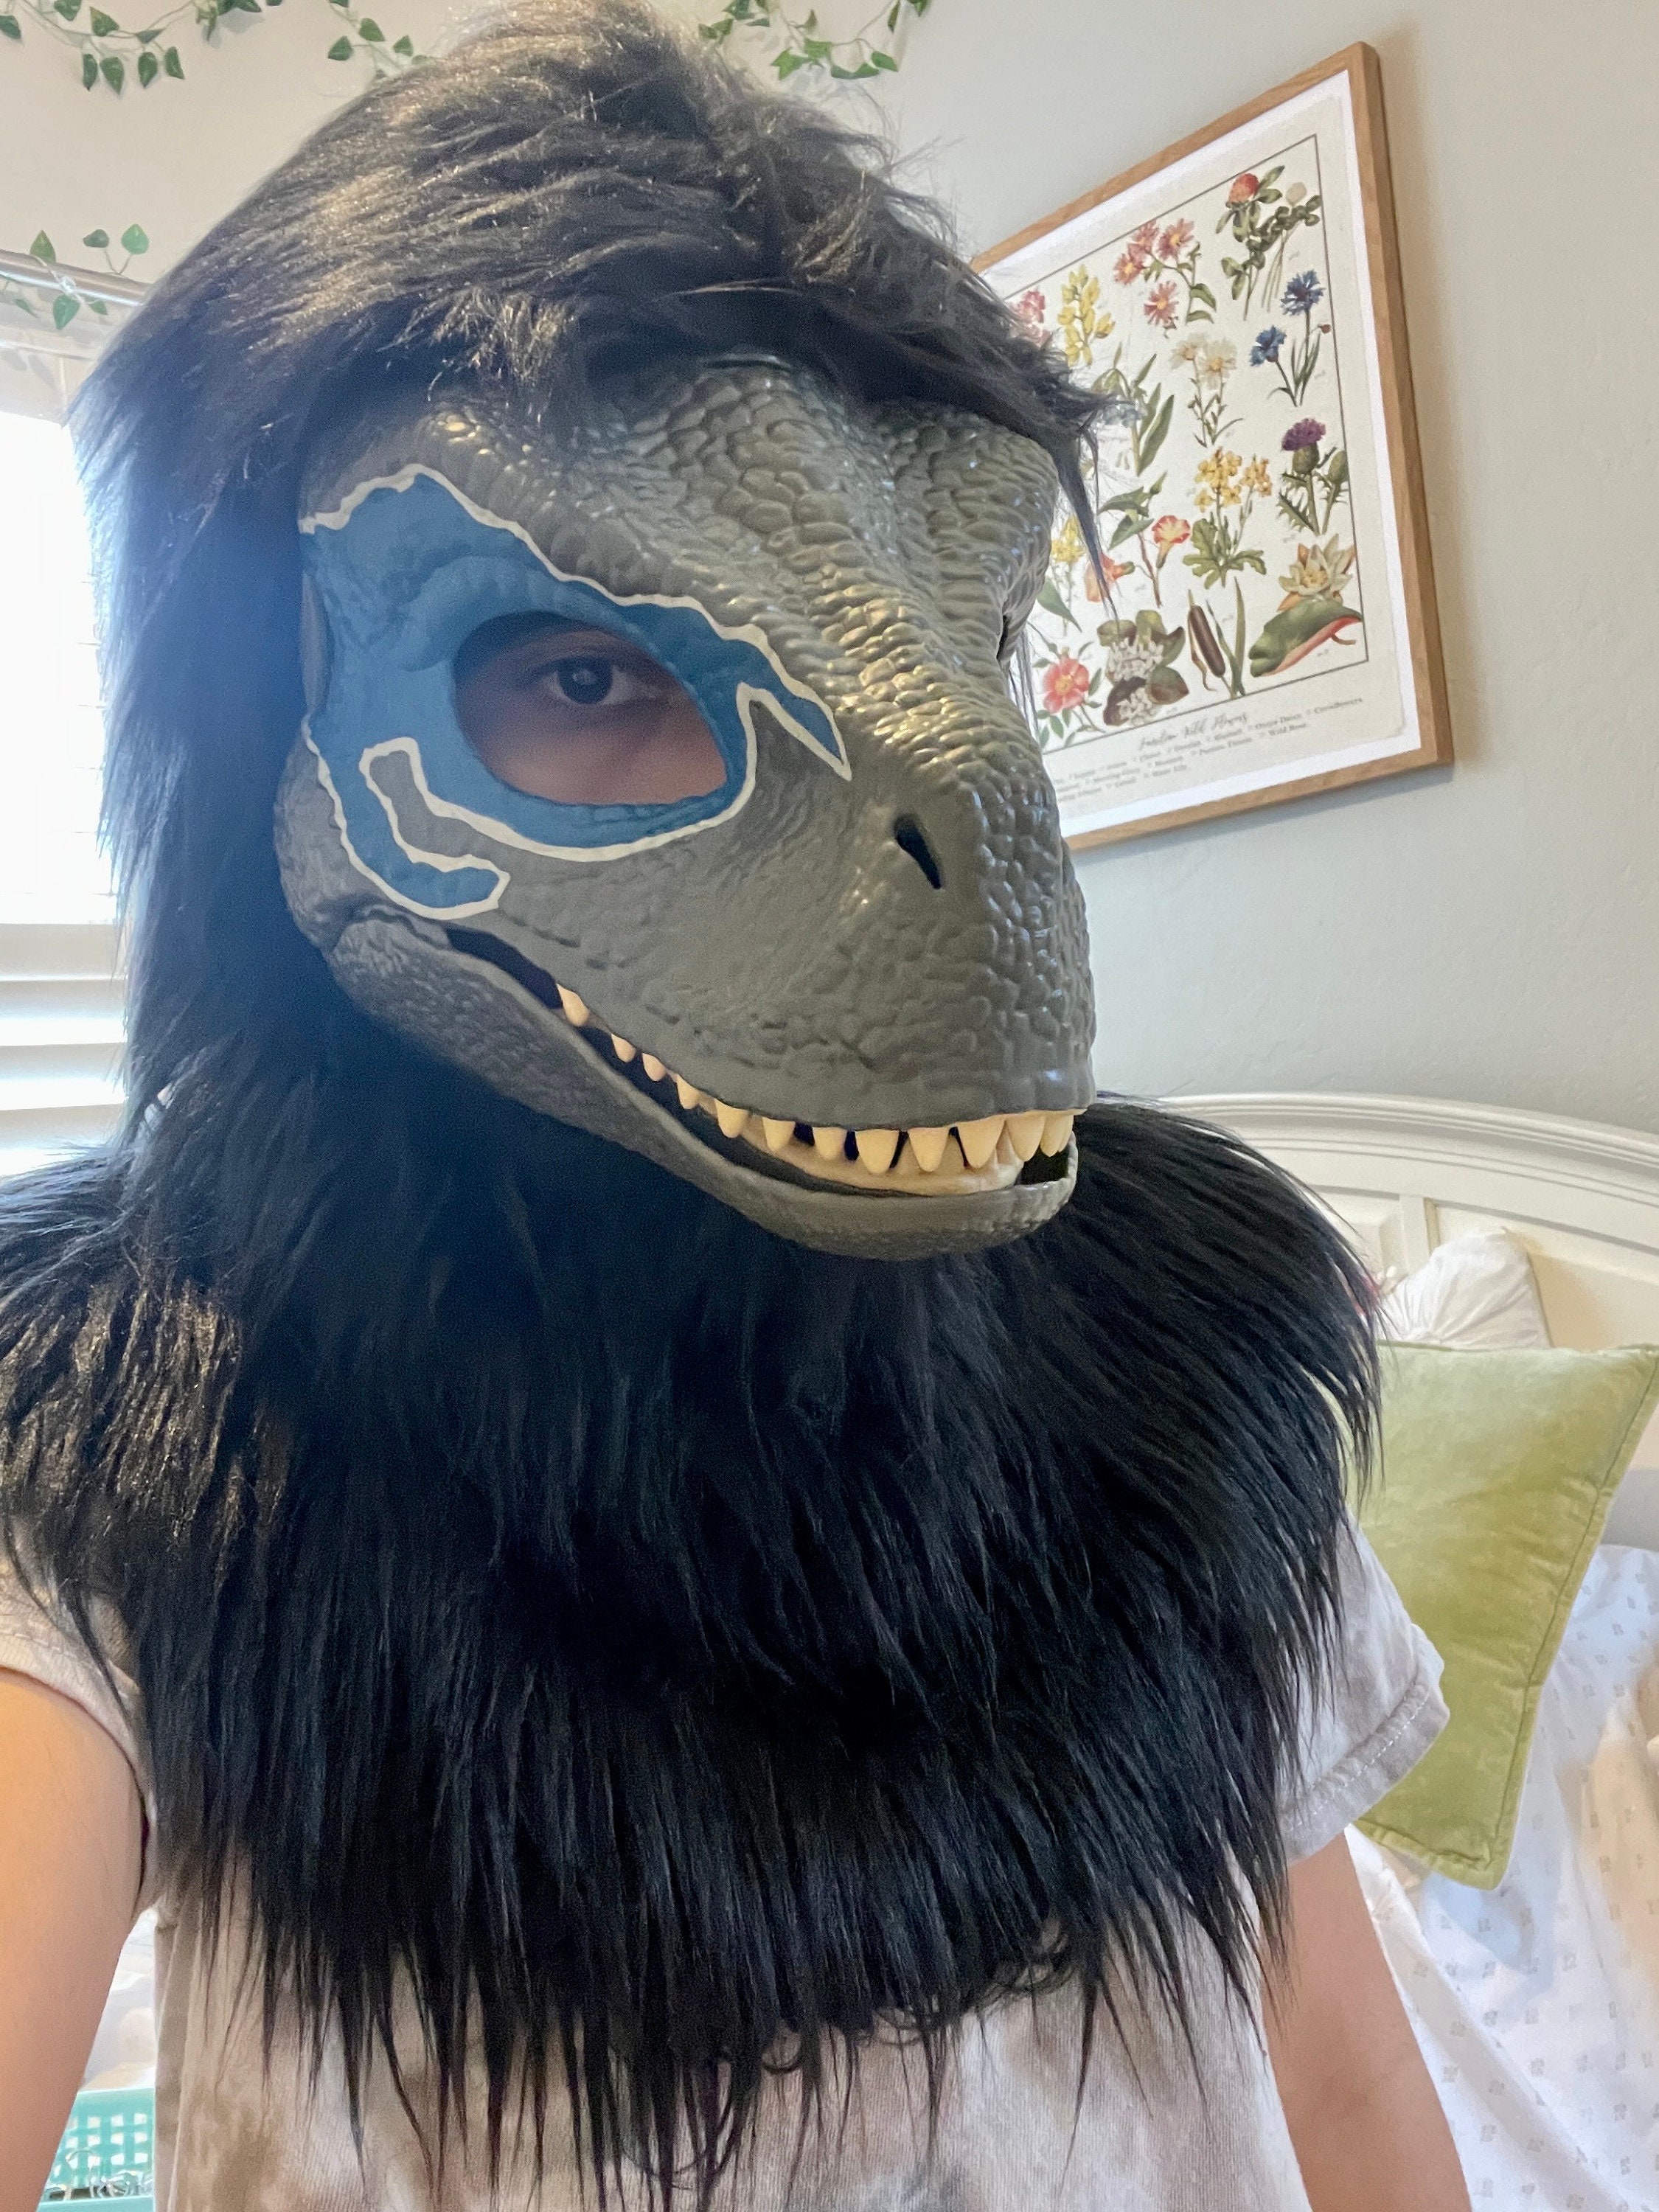 Dino Mask Etsy